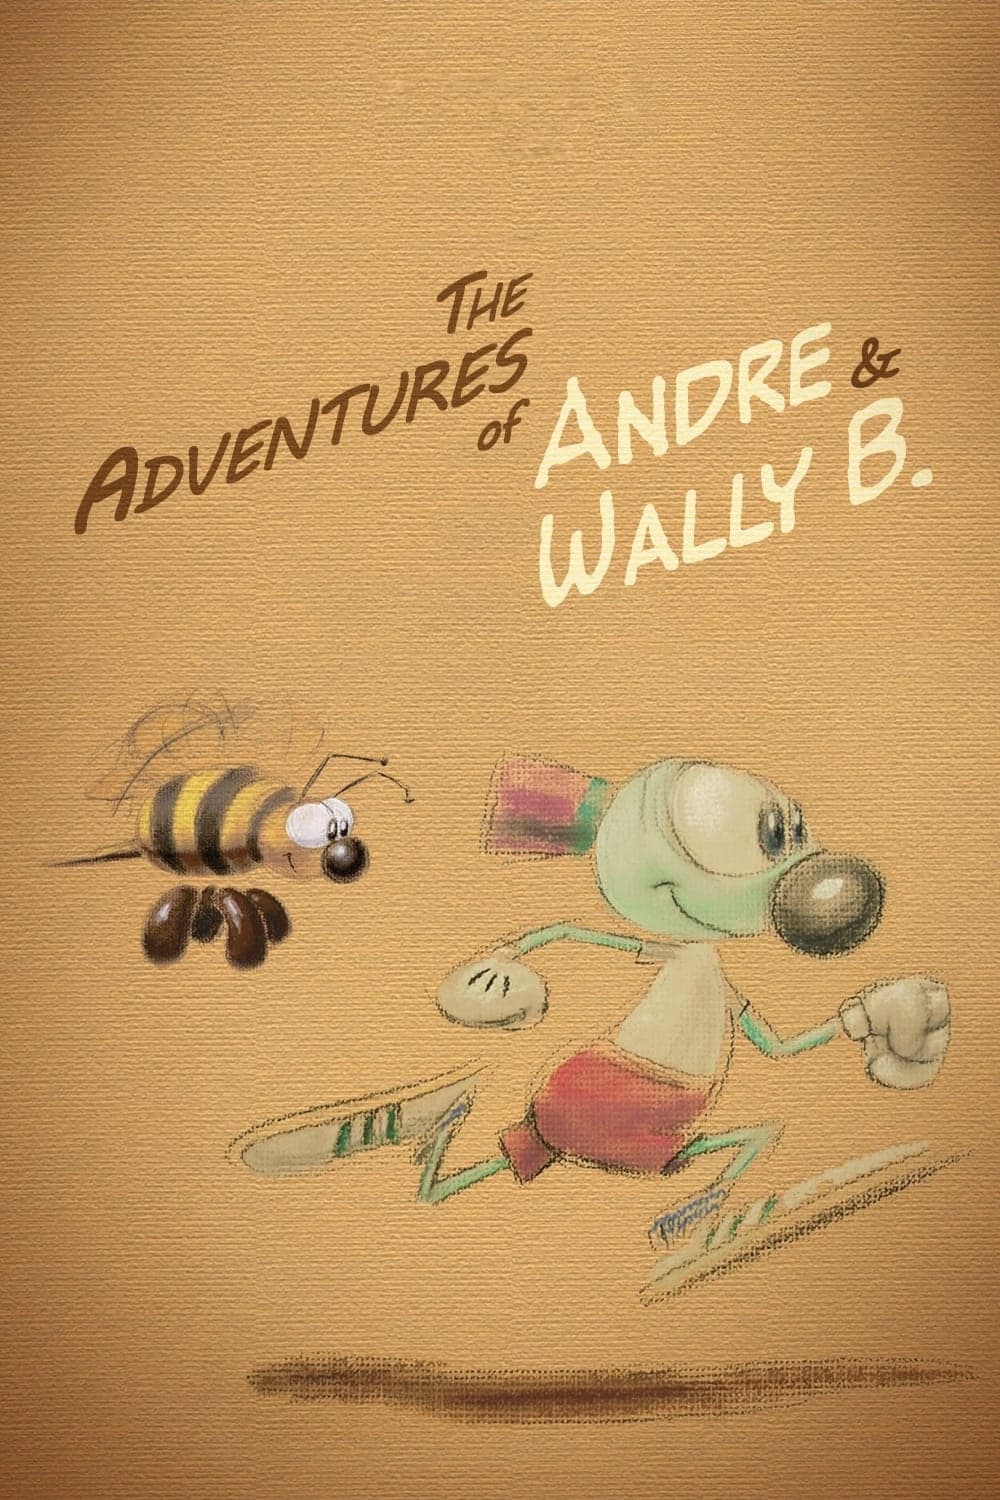 Las aventuras de André y Wally B.